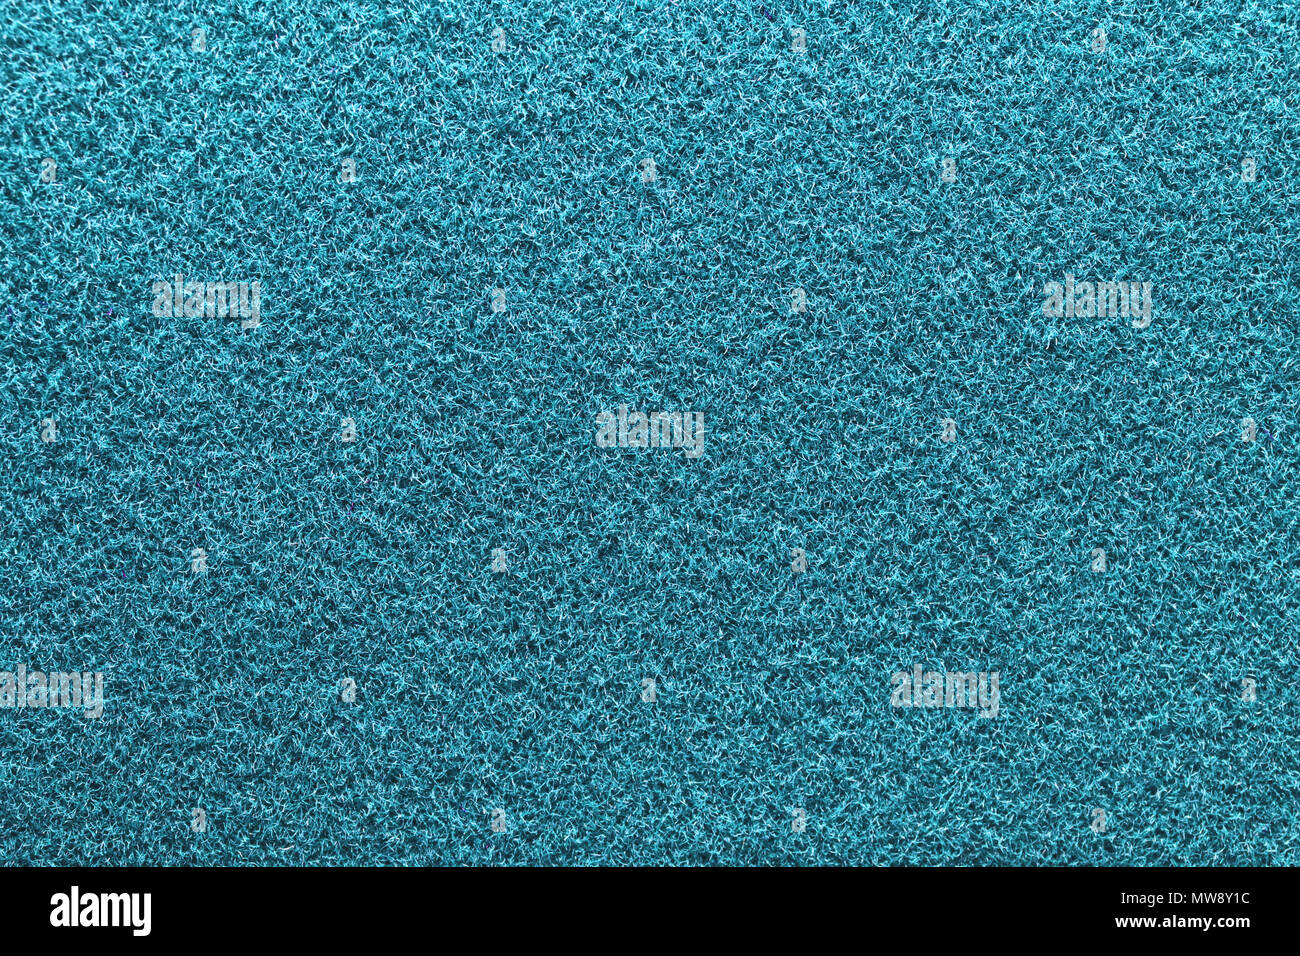 Hellblau flauschigen Material Textur. Himmel blau Detaillierte Fasern flauschige Oberfläche Hintergrund. Stockfoto